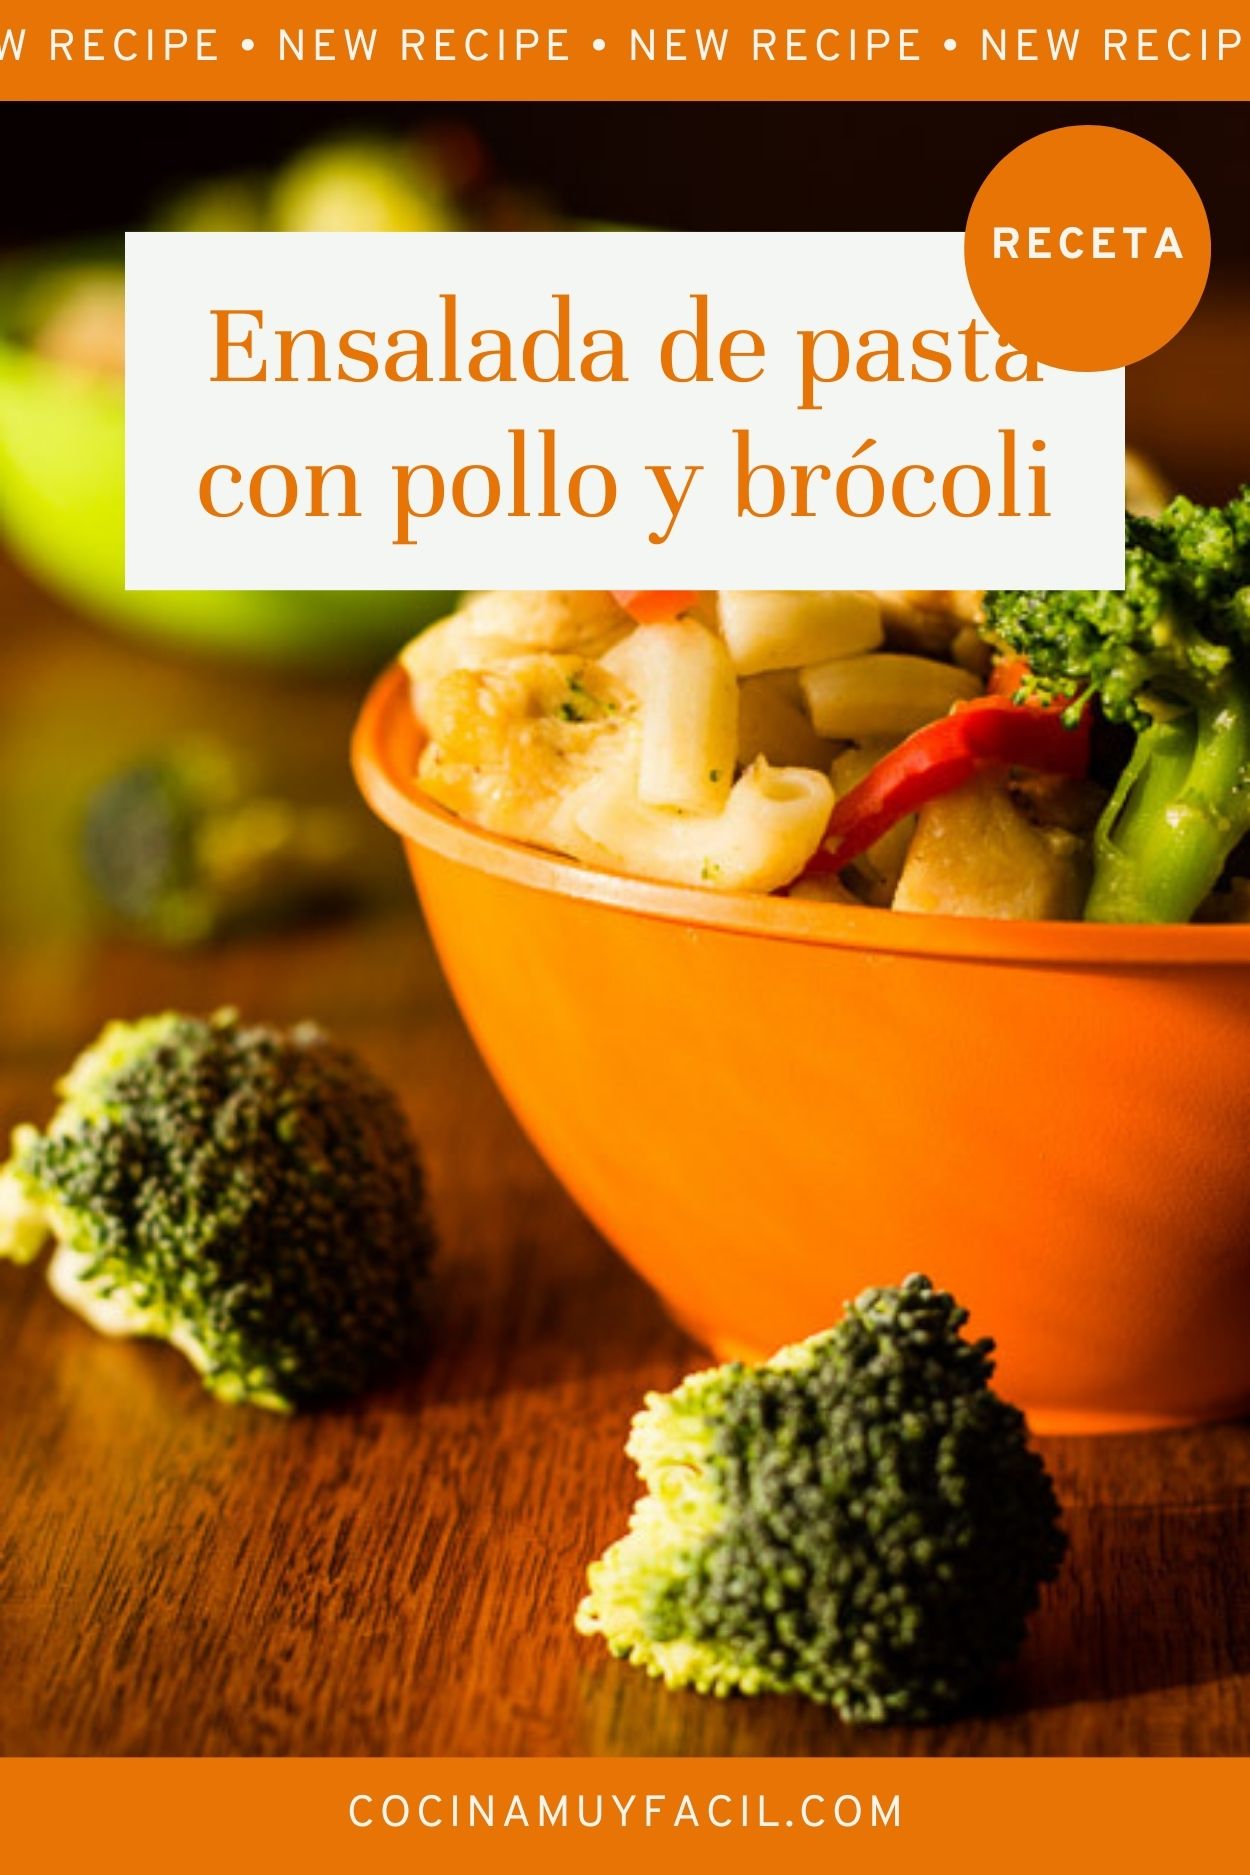 Ensalada de pasta con pollo y brócoli. Receta | cocinamuyfacil.com